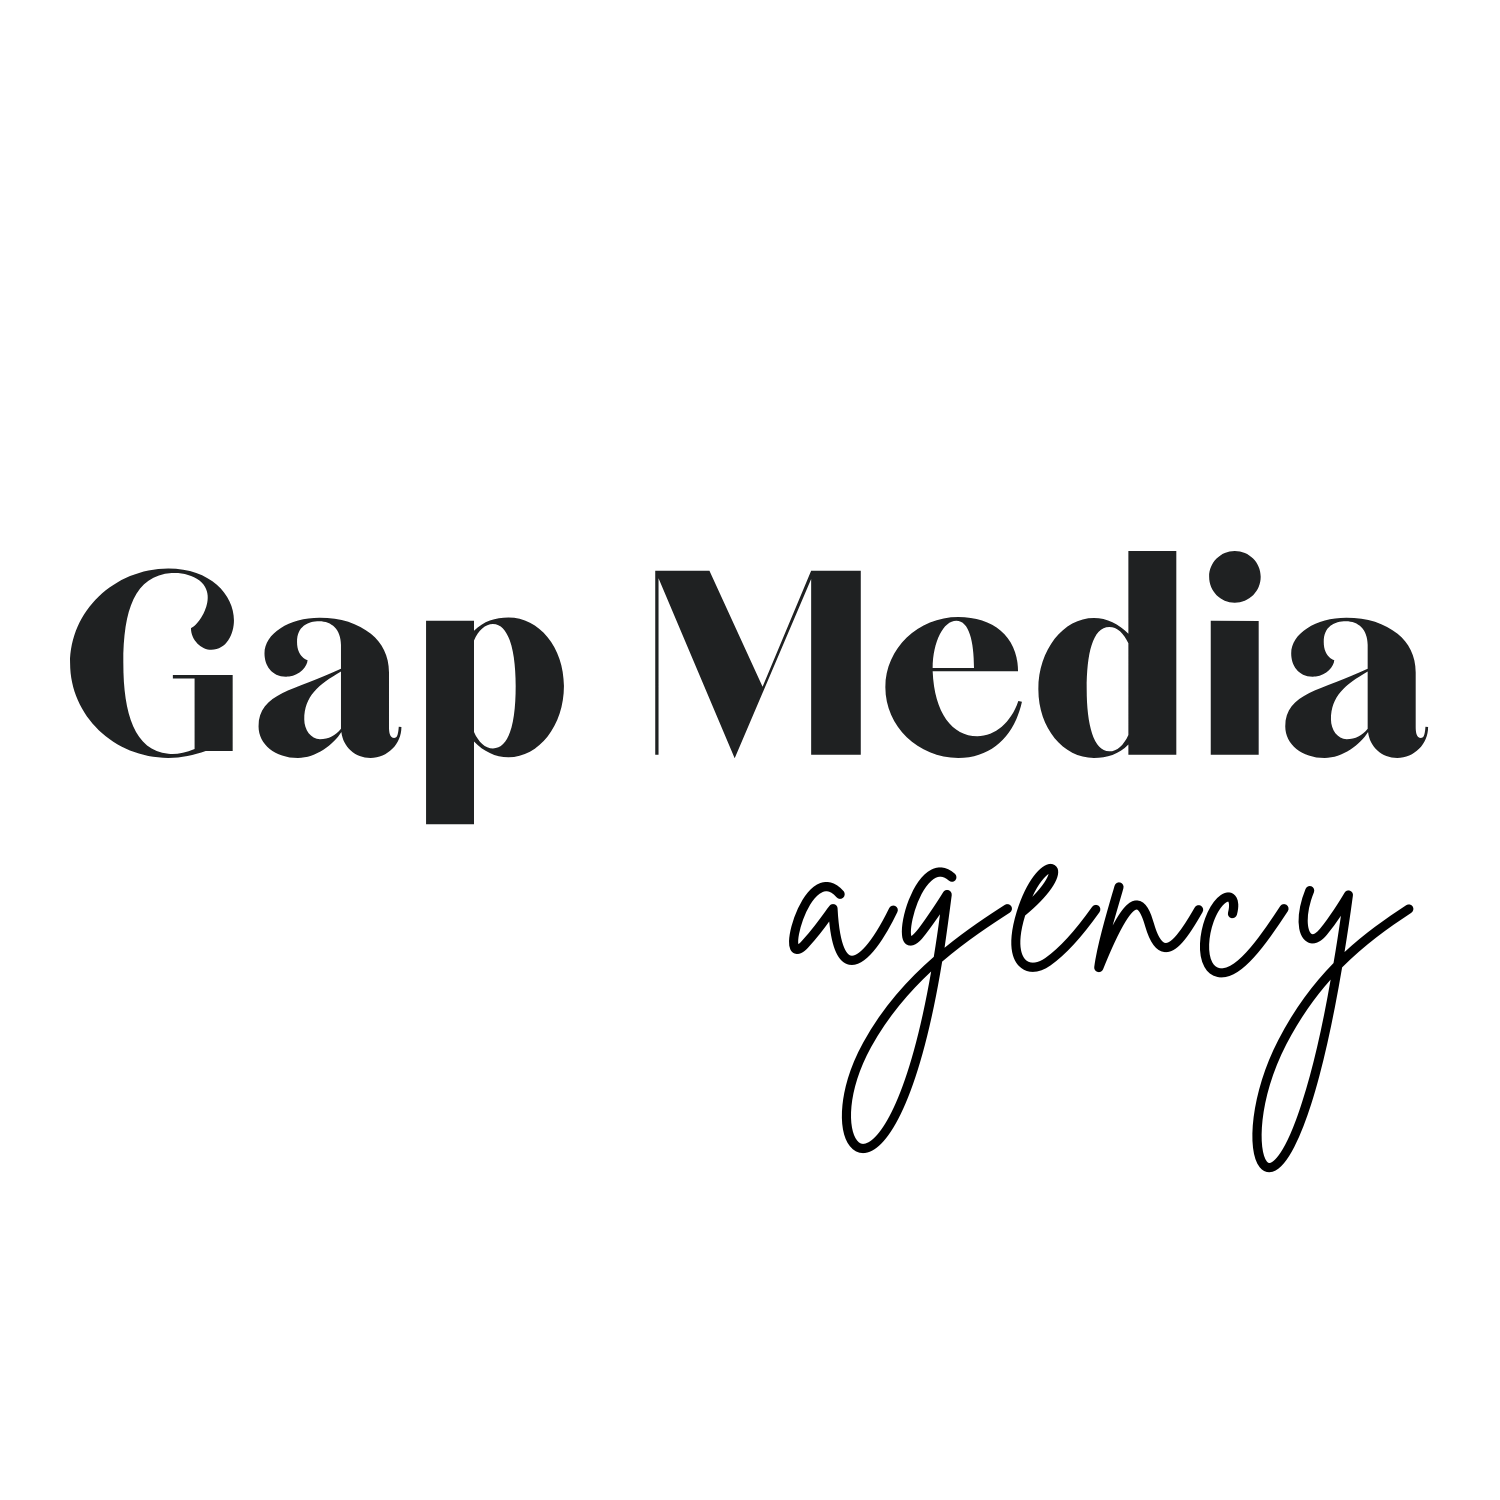 Gap Media Agency